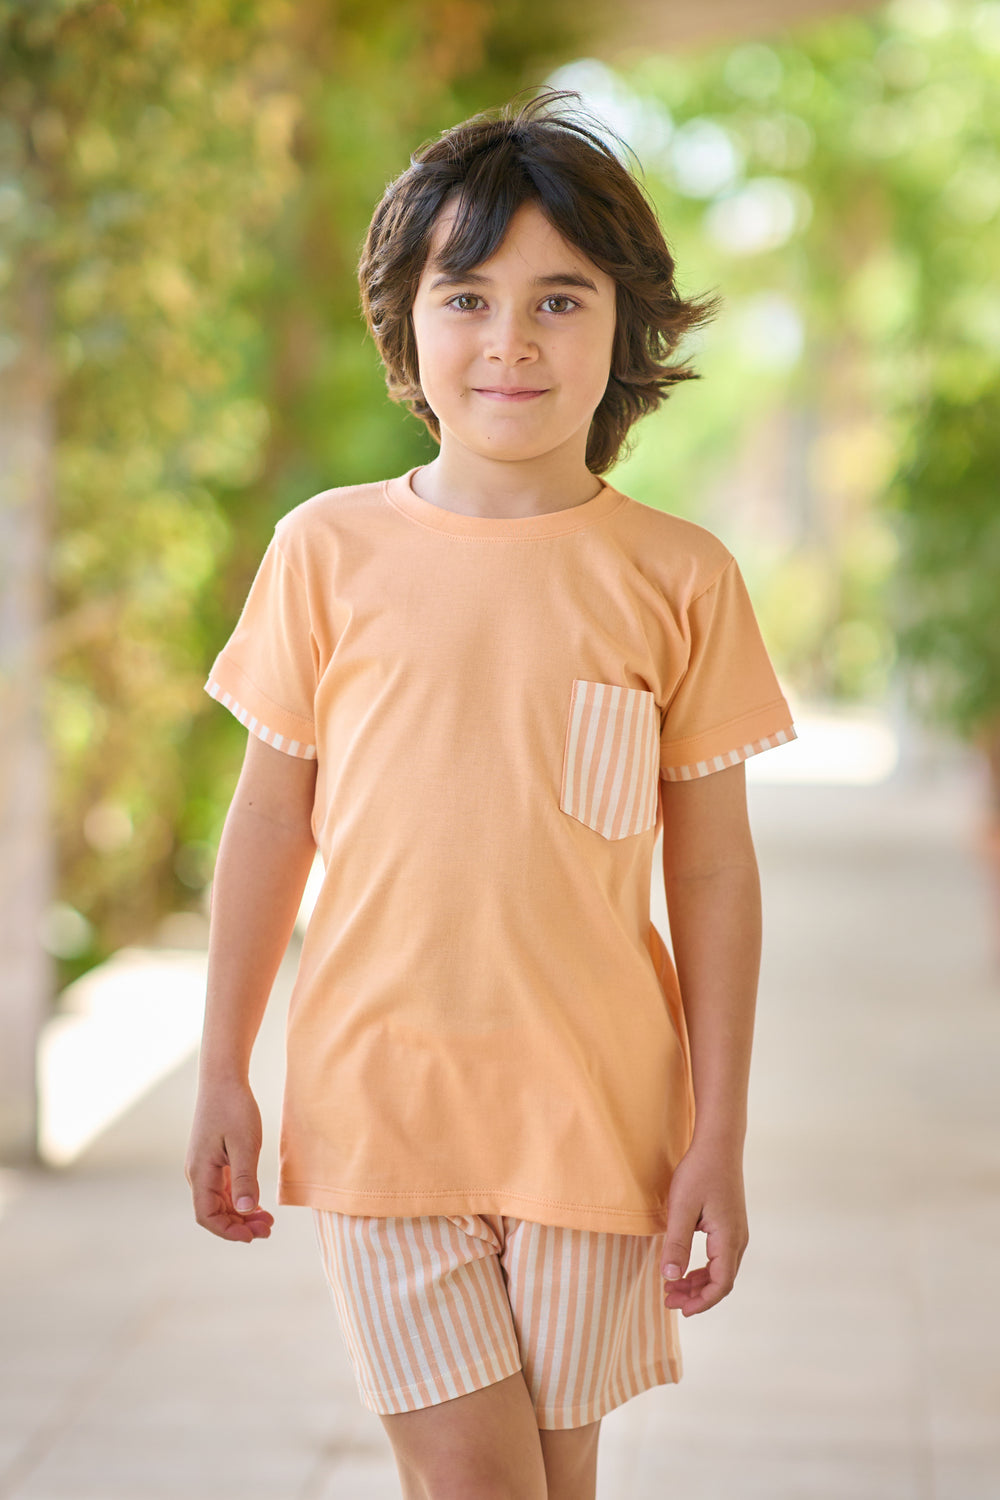 Rapife "Seth" Orange Stripe T-Shirt & Shorts | Millie and John